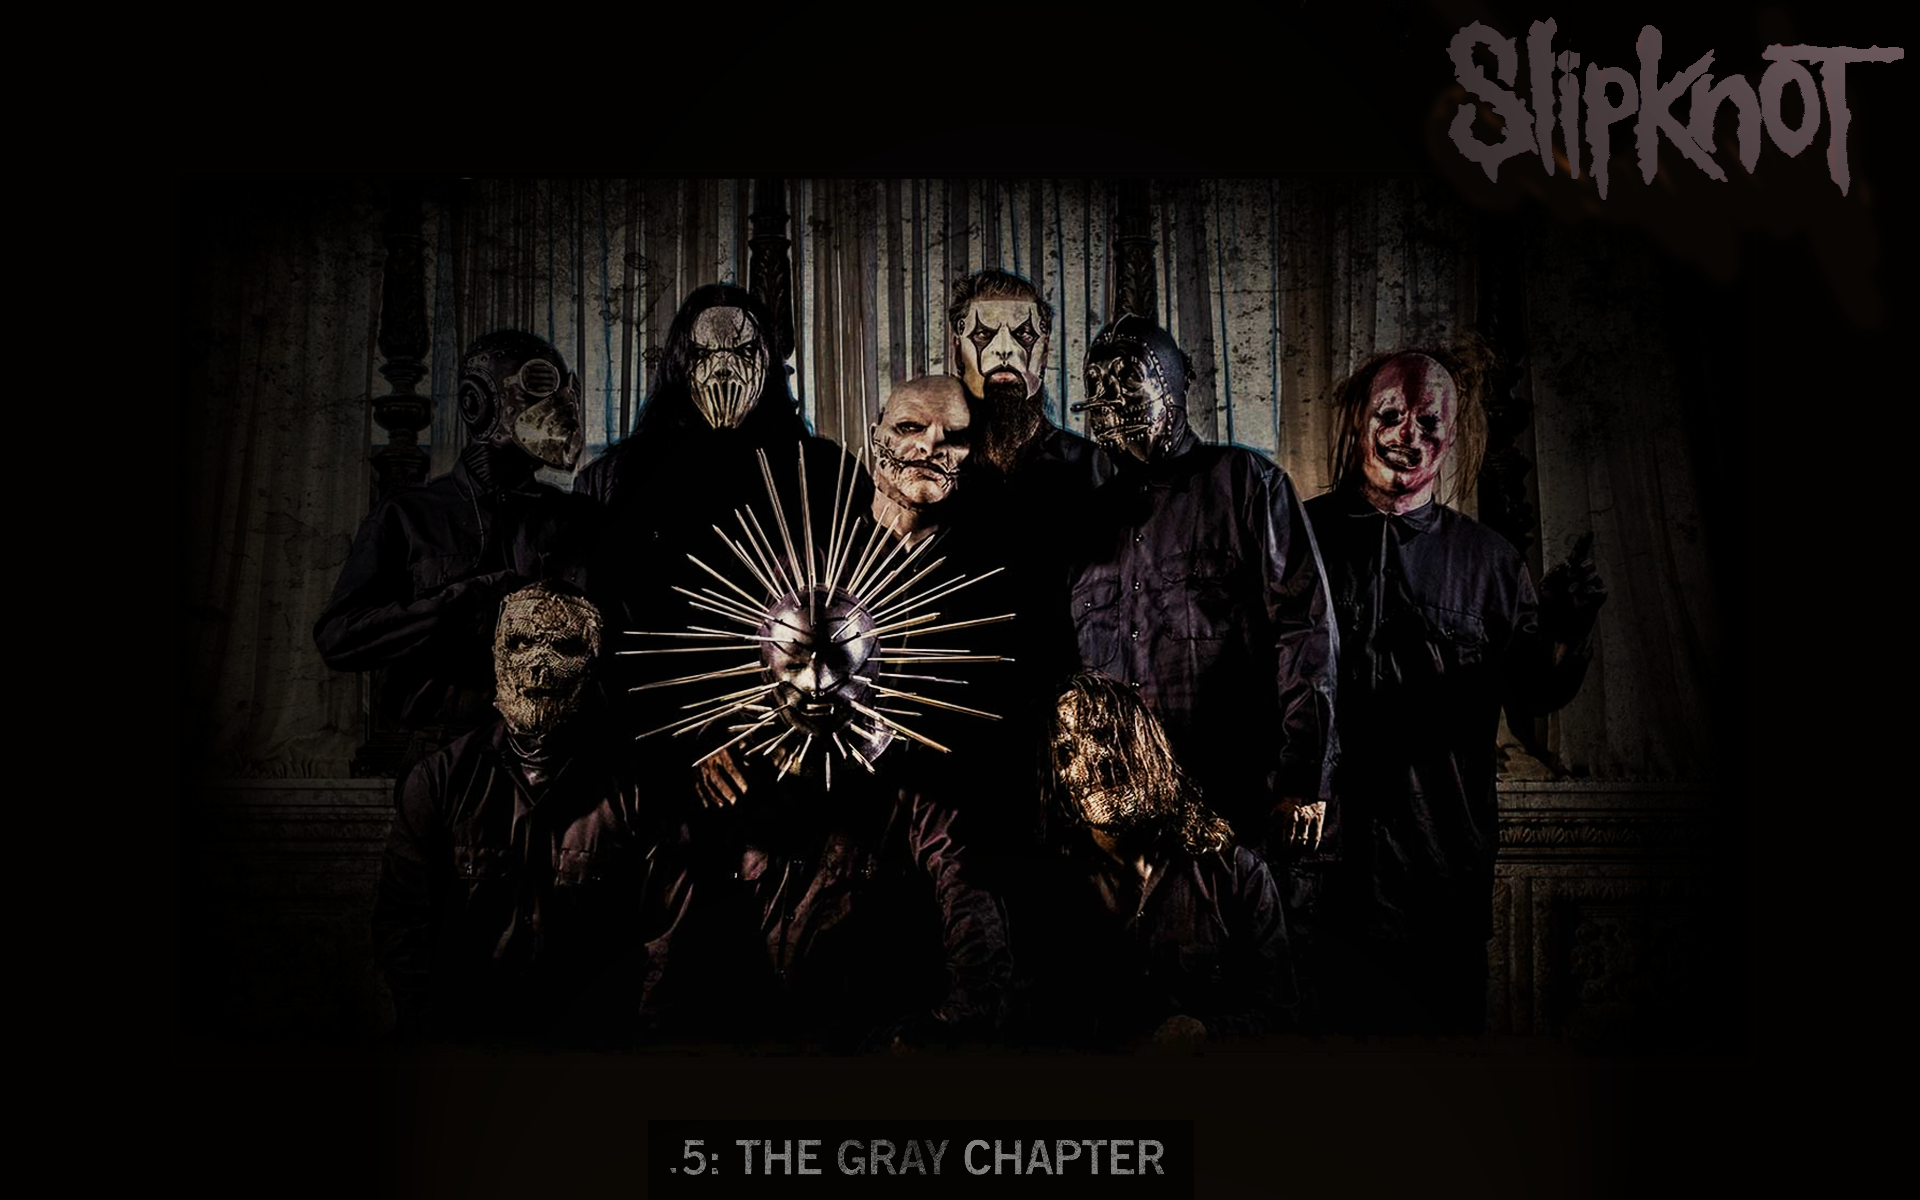 Slipknot - .5: The Gray Chapter | Wallpaper by soadyer on DeviantArt